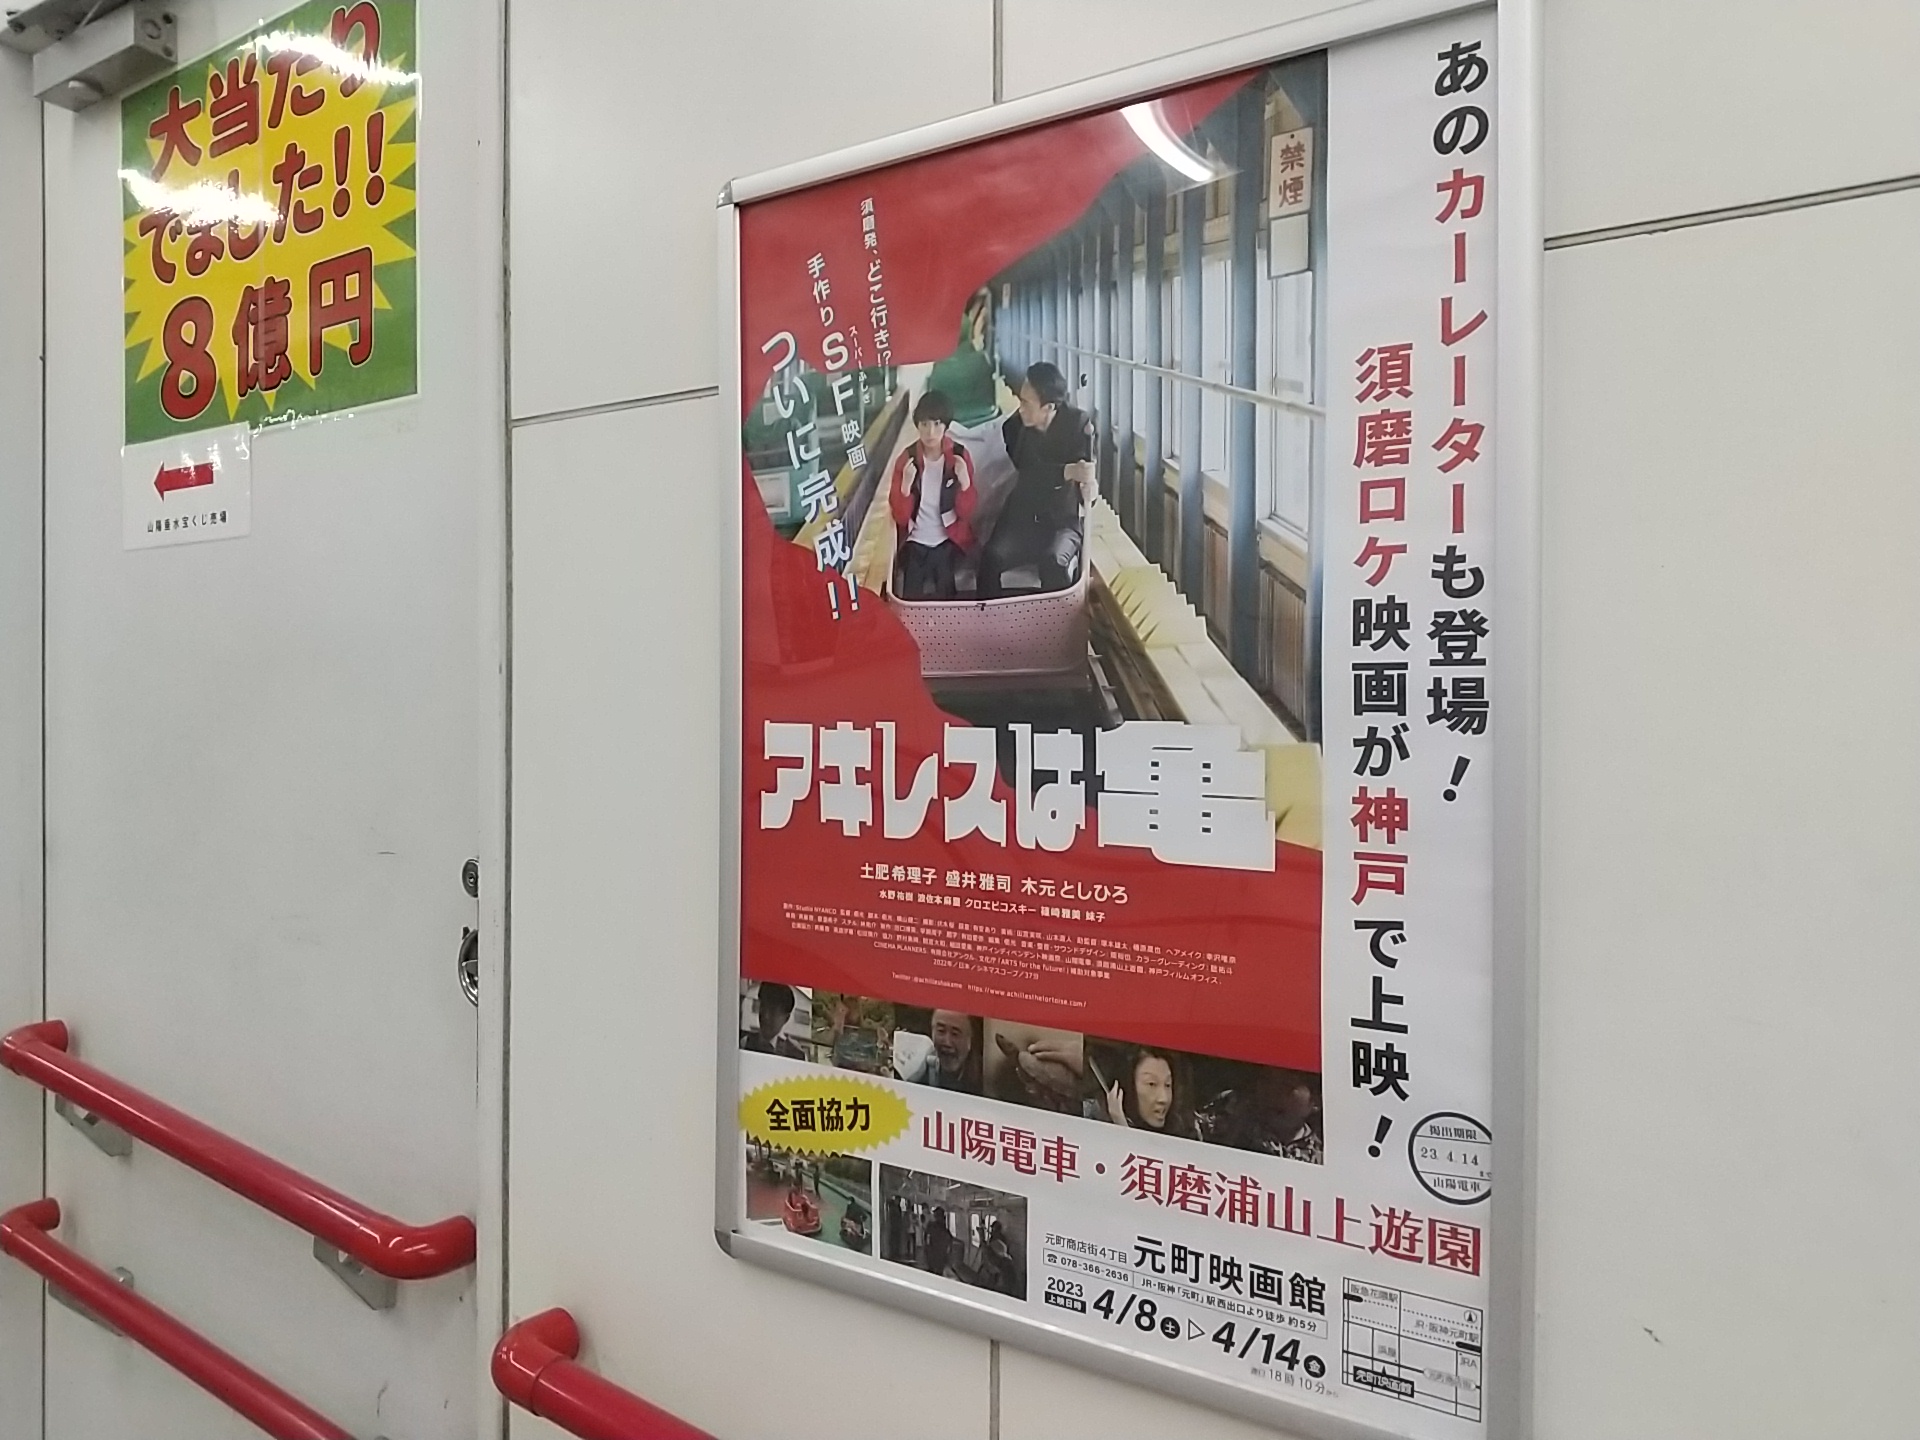 須磨浦が舞台の映画「アキレスは亀」ポスターを駅で発見！